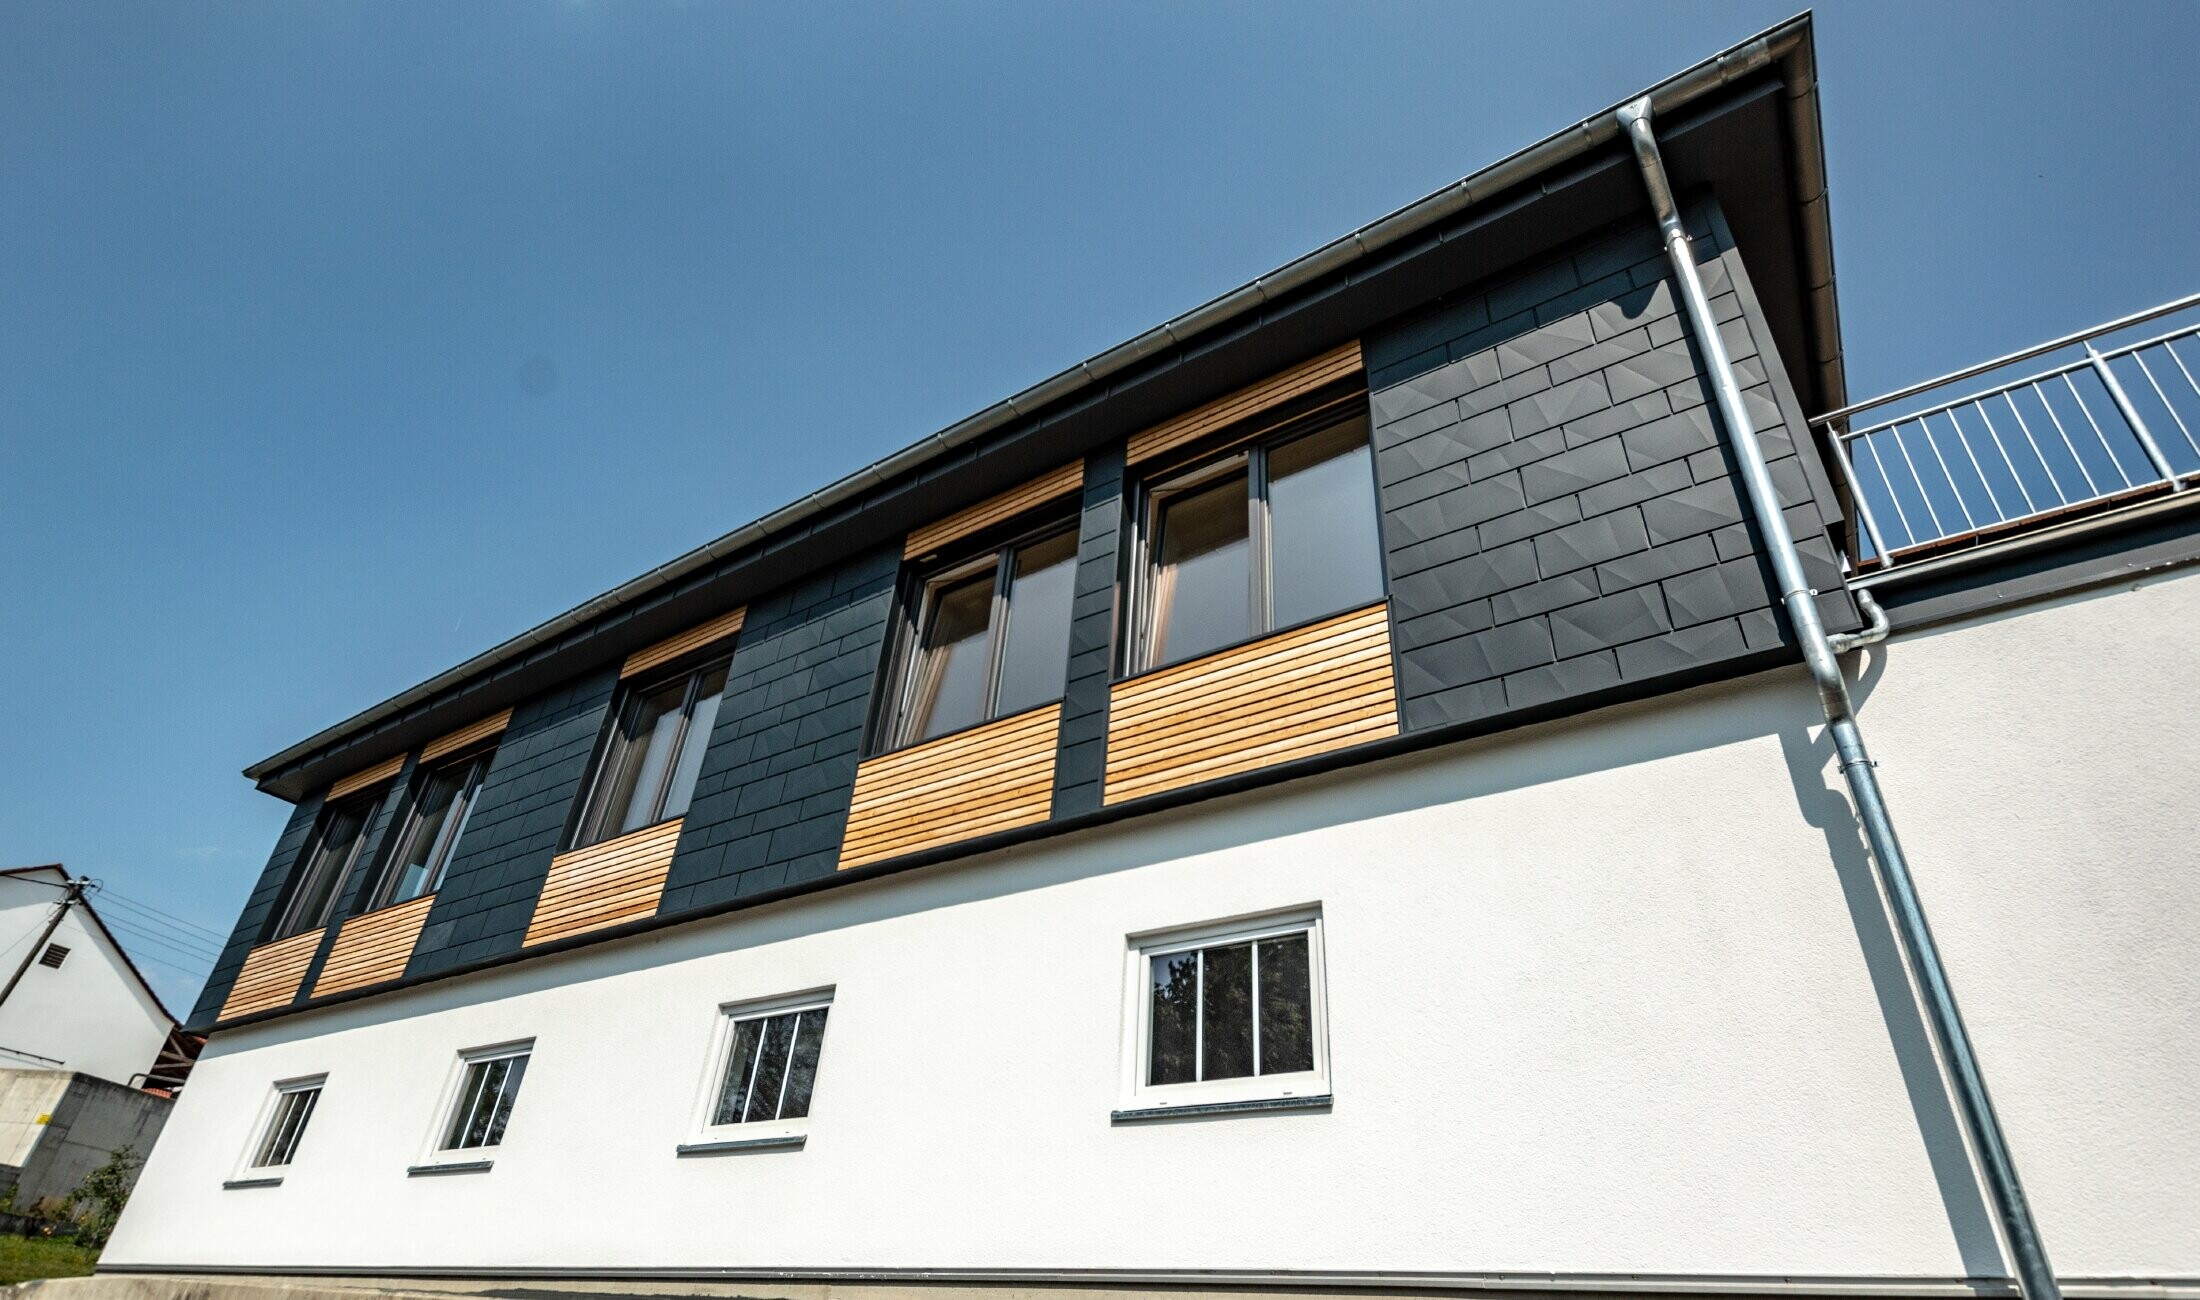 Conception de façade avec différents matériaux de construction : Siding.X PREFA en aluminium couleur anthracite, habillage en bois horizontal et façade en crépi blanc.